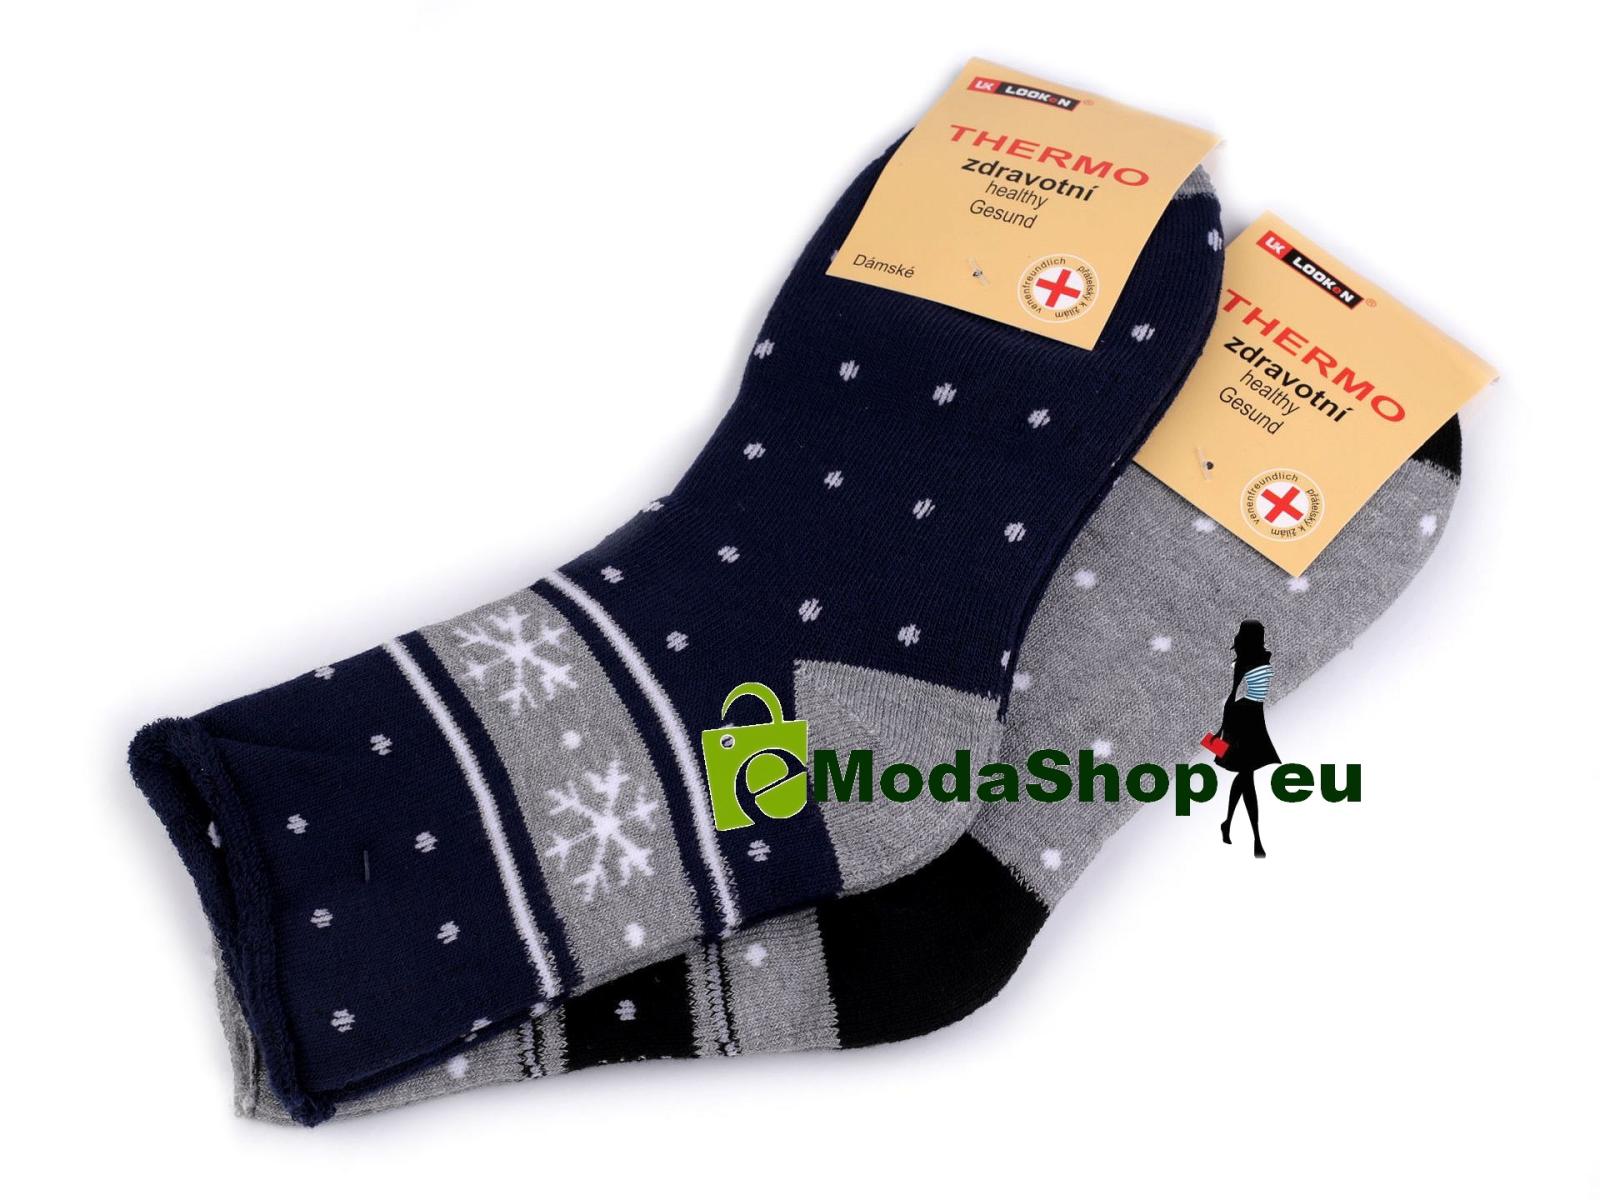 Dámske bavlnené ponožky thermo so zdravotným lemom, vločka, 1 pár (rôzne farby, veľkosti)